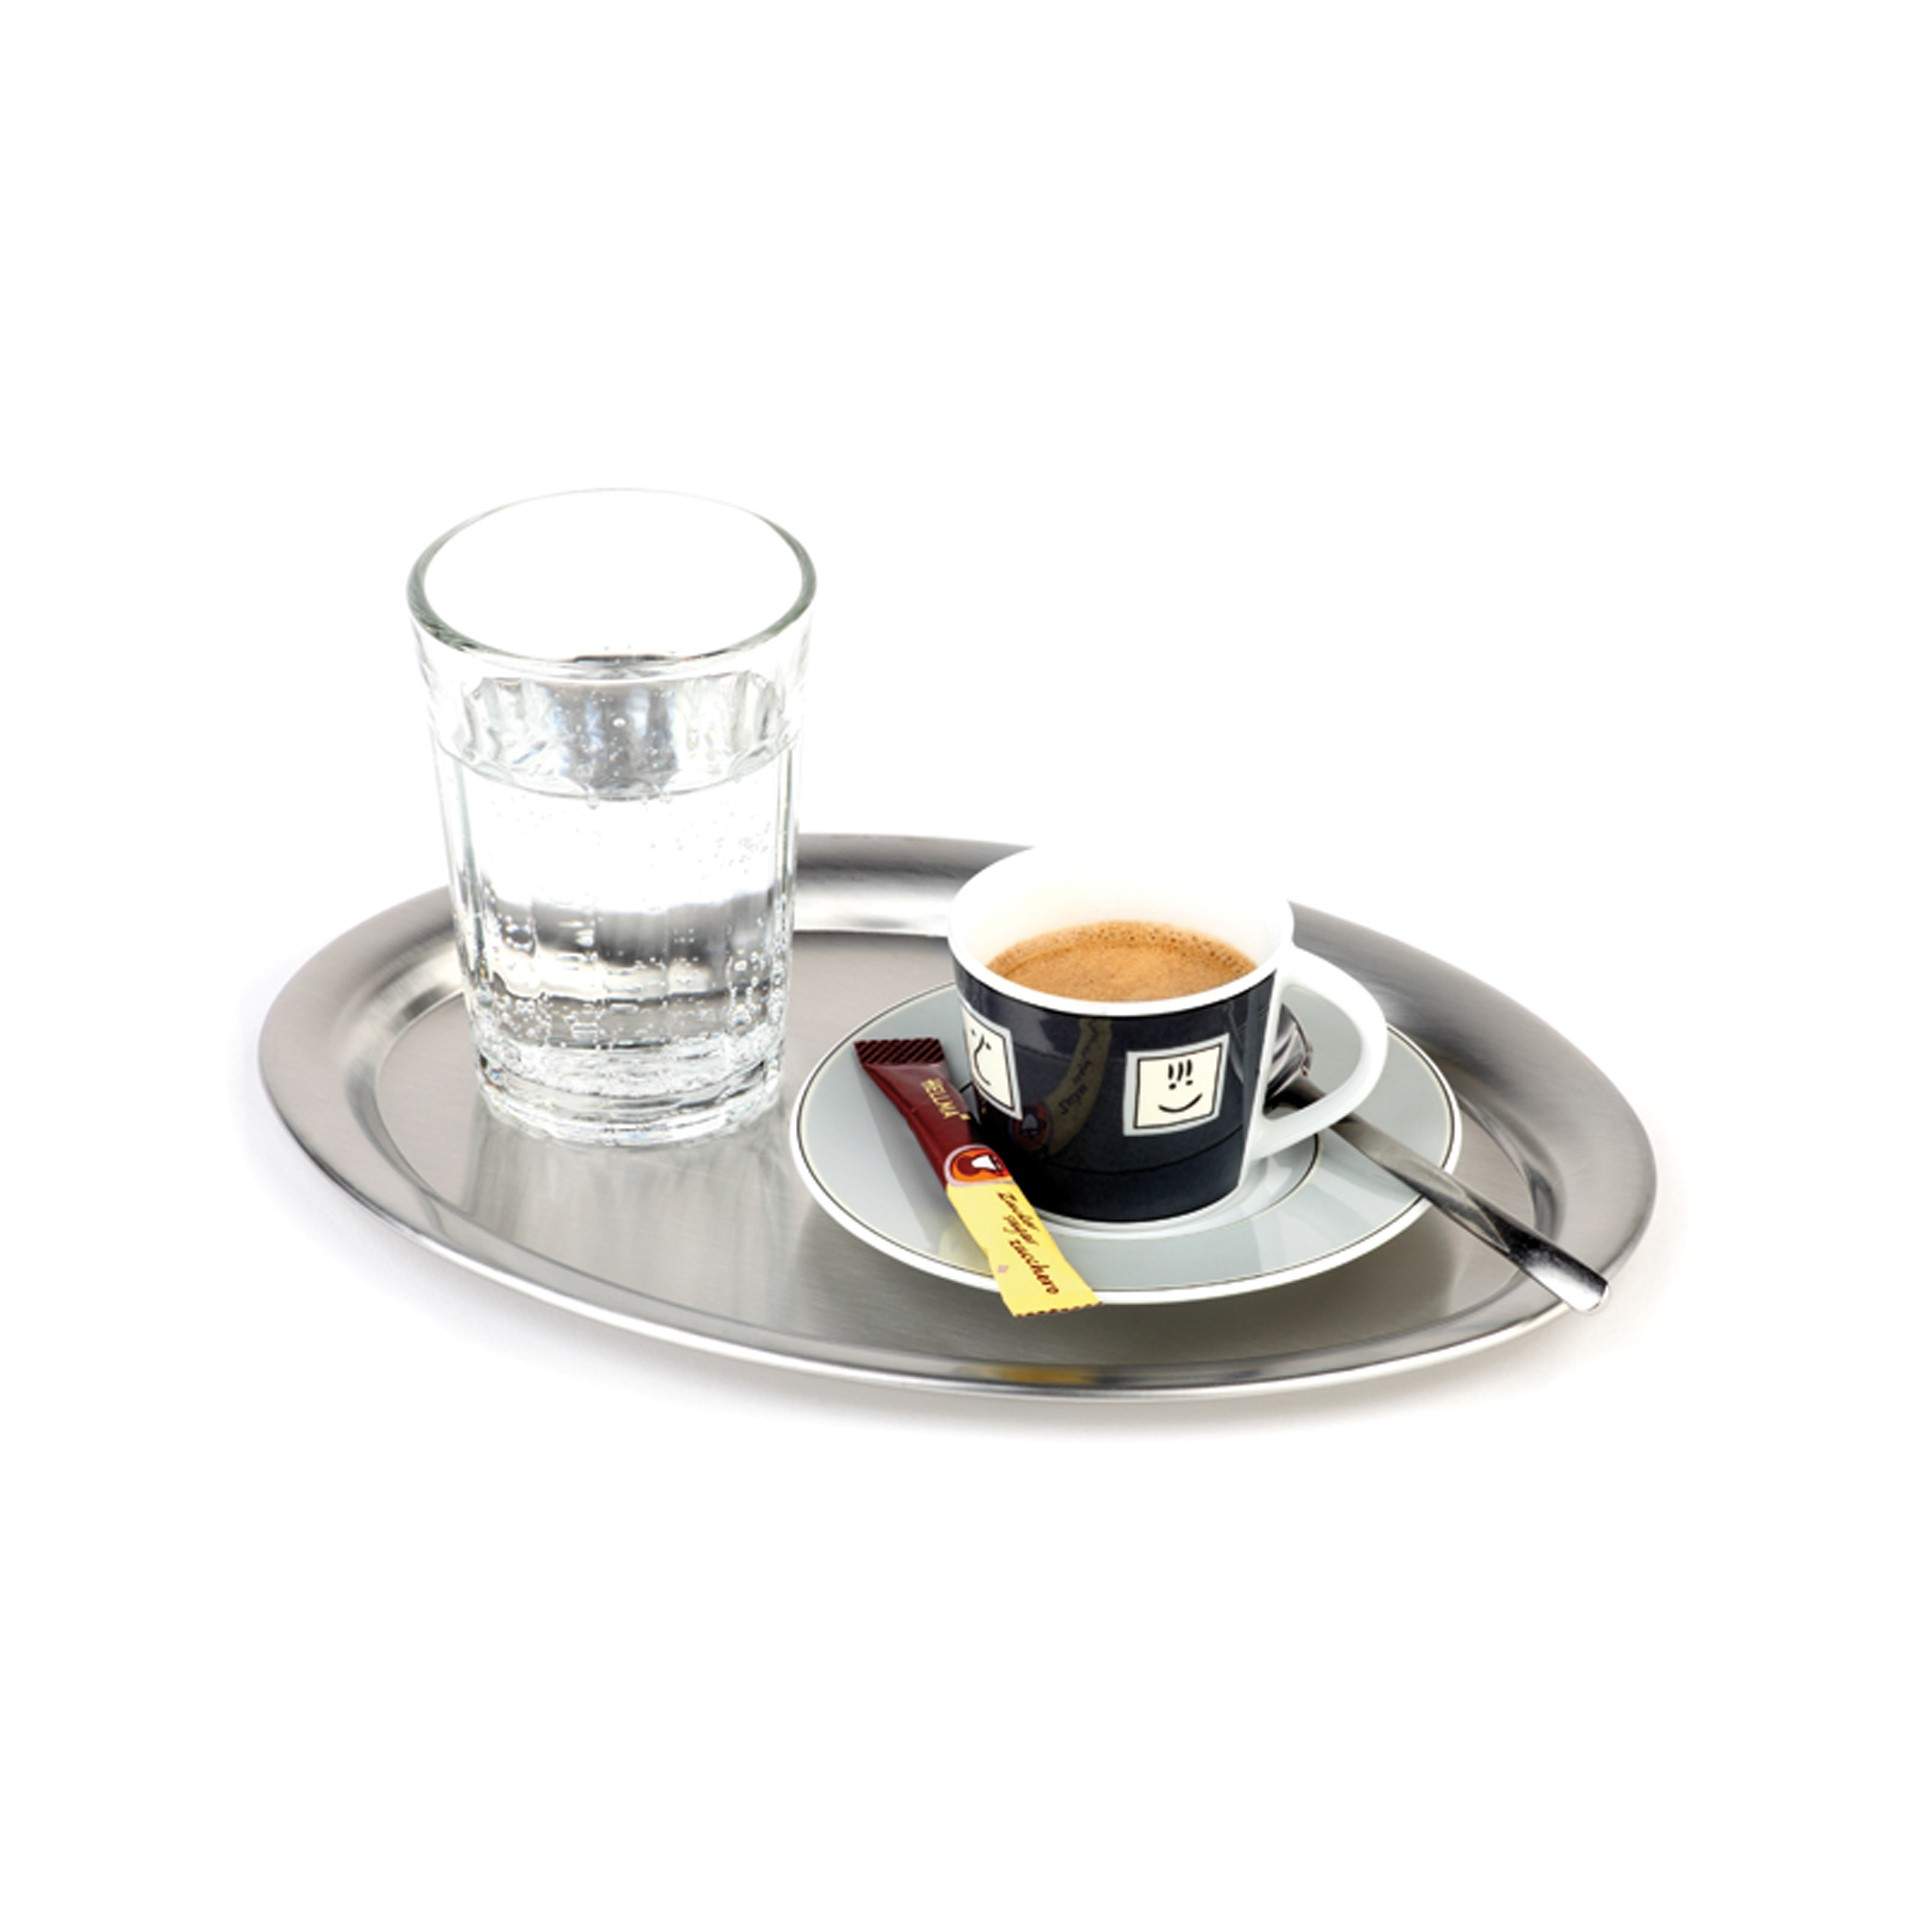 Serviertablett - für eine Tasse - Serie Kaffeehaus - matt poliert - oval - Abm. 26,5 x 19,5 x 1,5 cm - Edelstahl - 30112-B